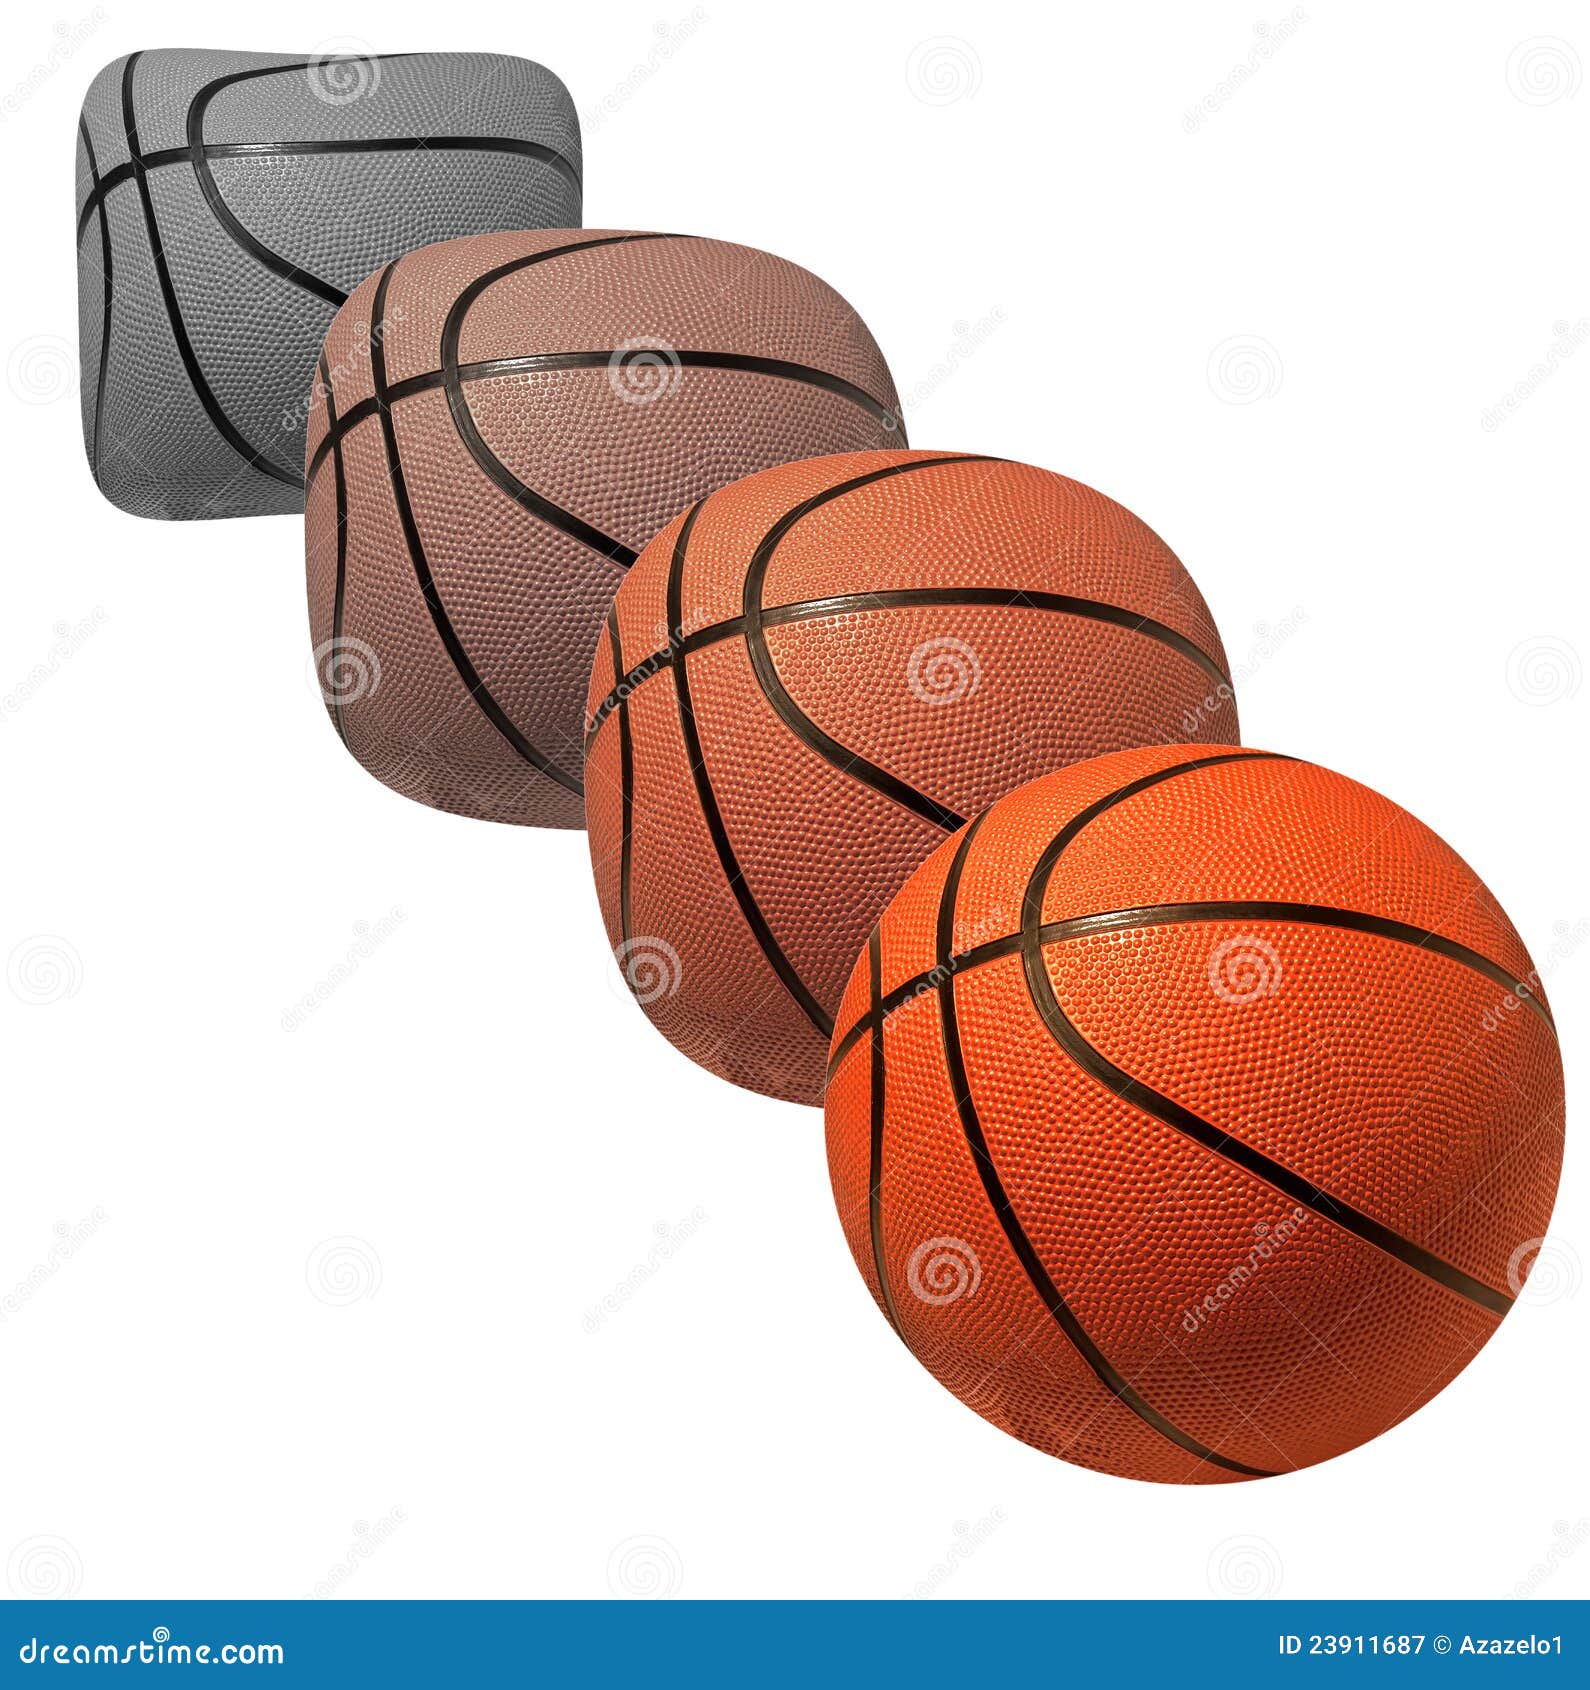 Desarrollo del baloncesto imagen de archivo. Imagen esfera -